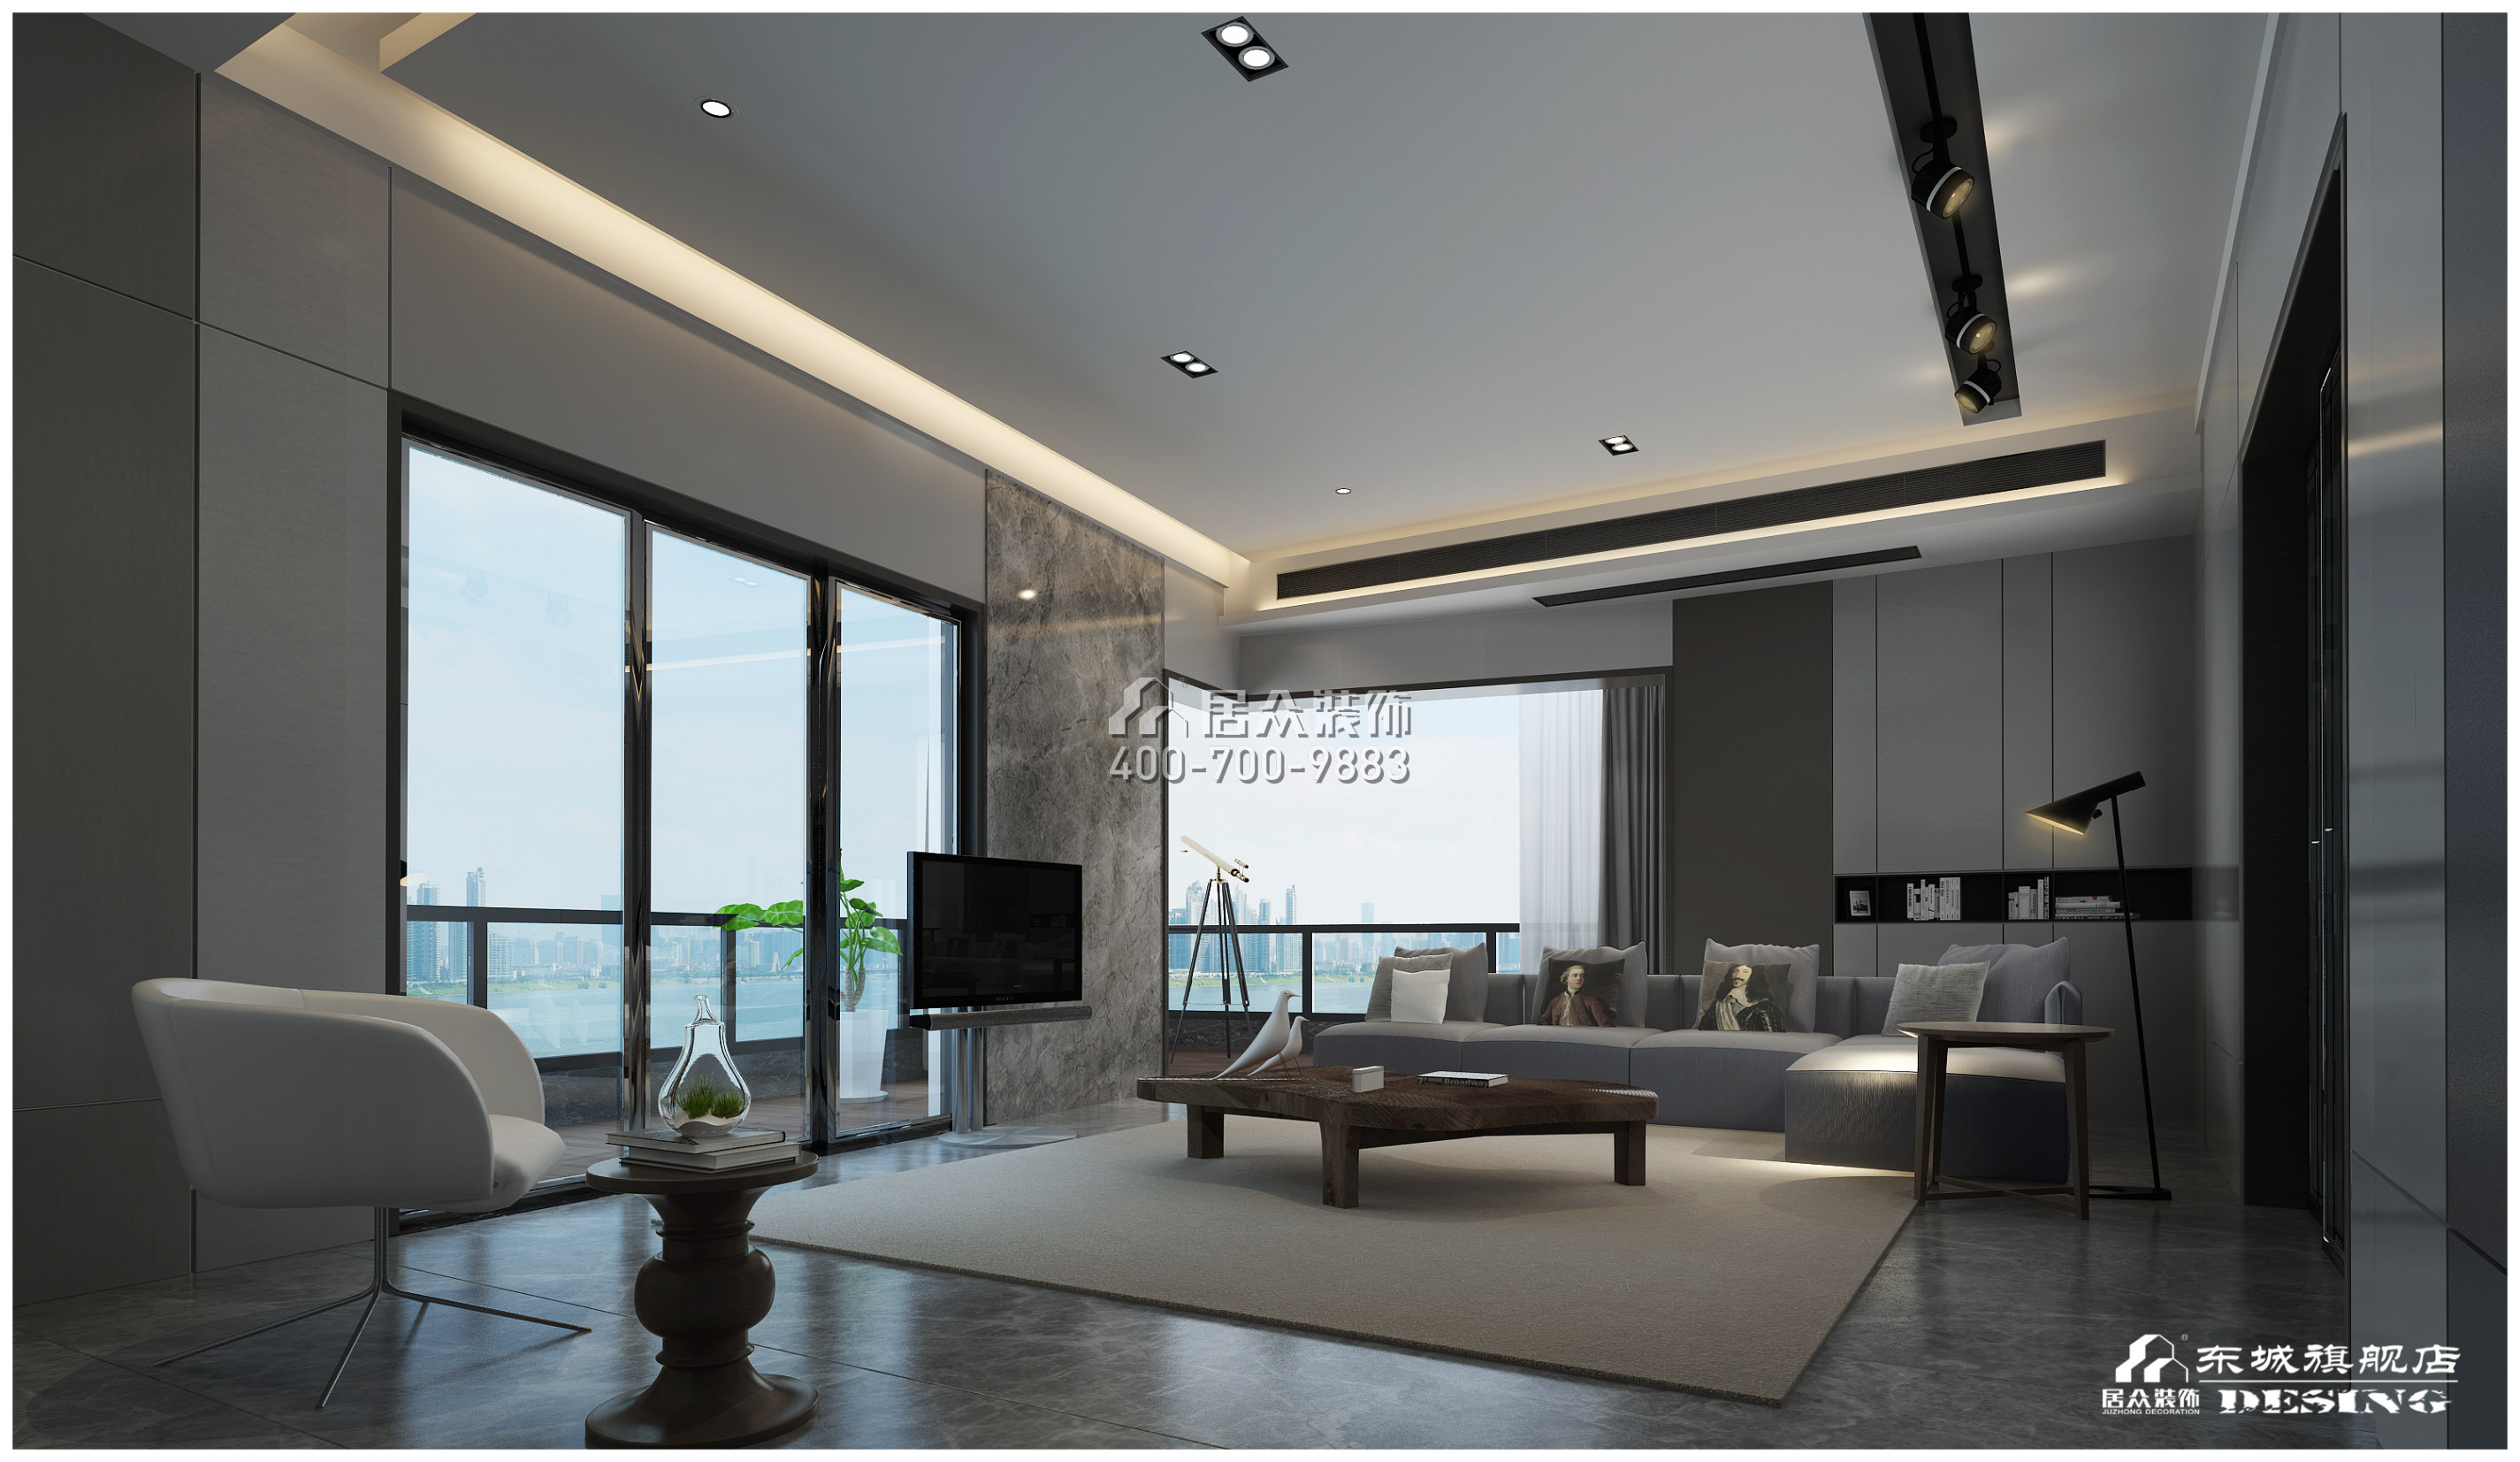 北辰定江洋285平方米现代简约风格平层户型客厅装修效果图